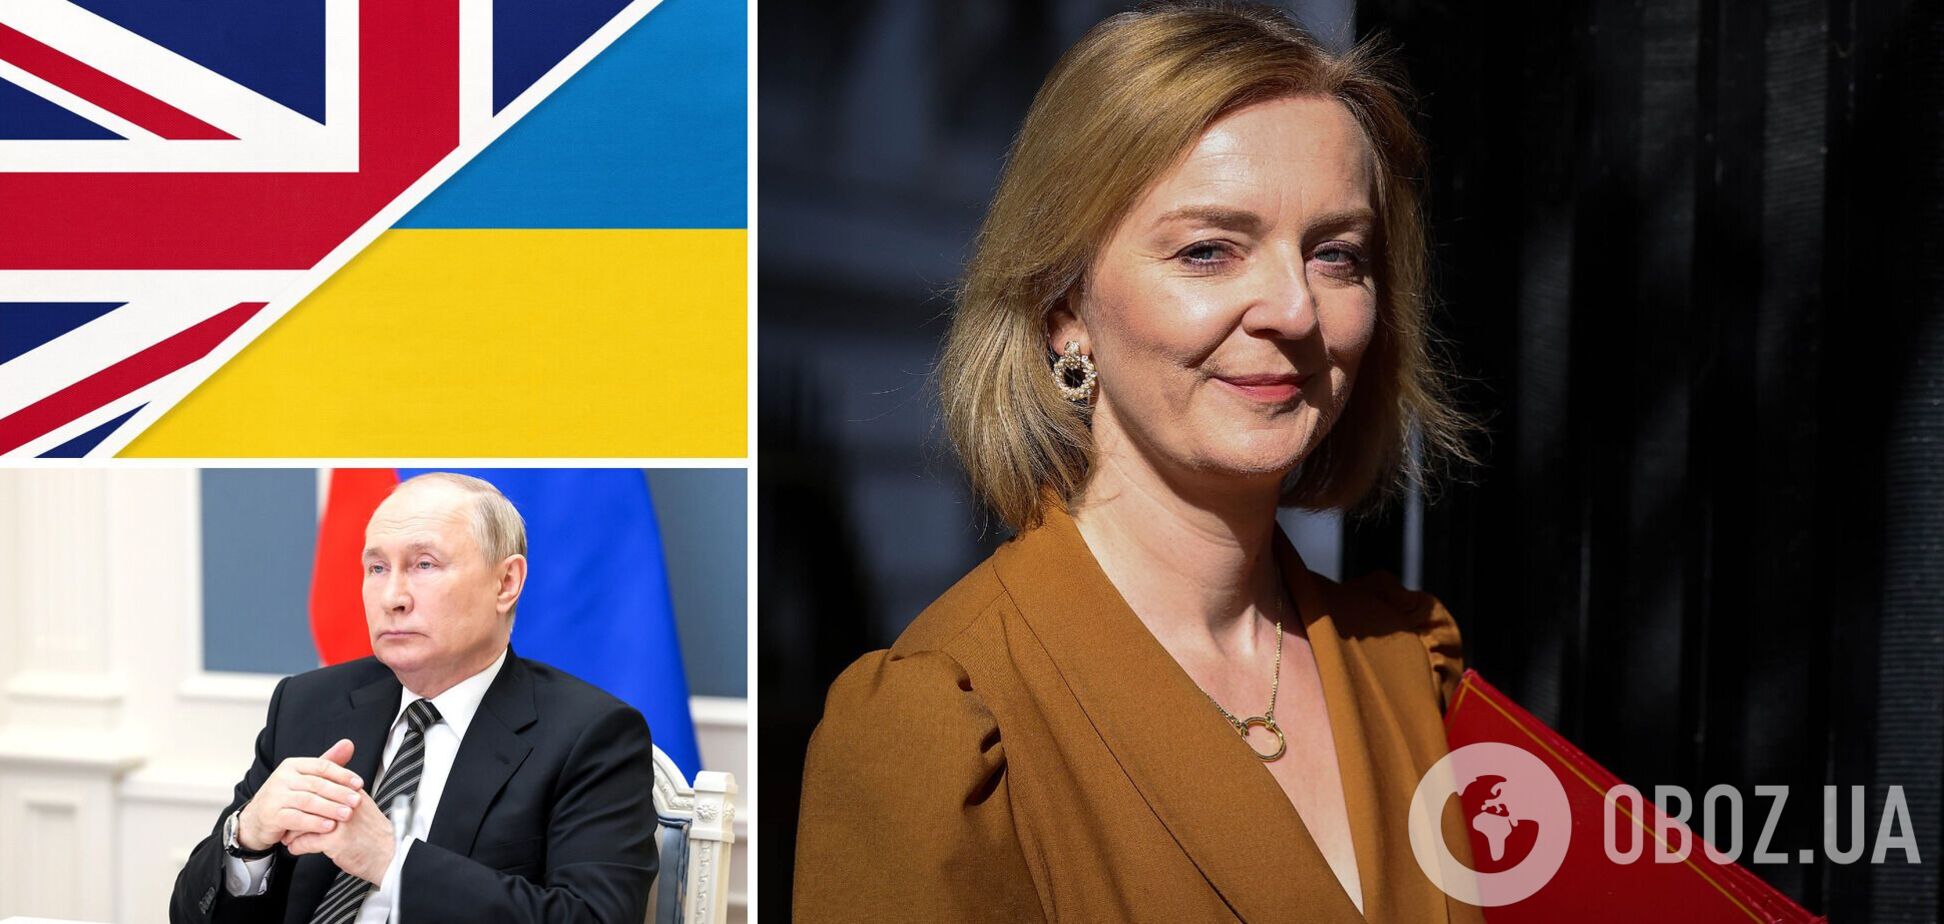 Допомога Україні та готовність натиснути 'ядерну кнопку': що потрібно знати про нову прем'єрку Великої Британії Ліз Трасс